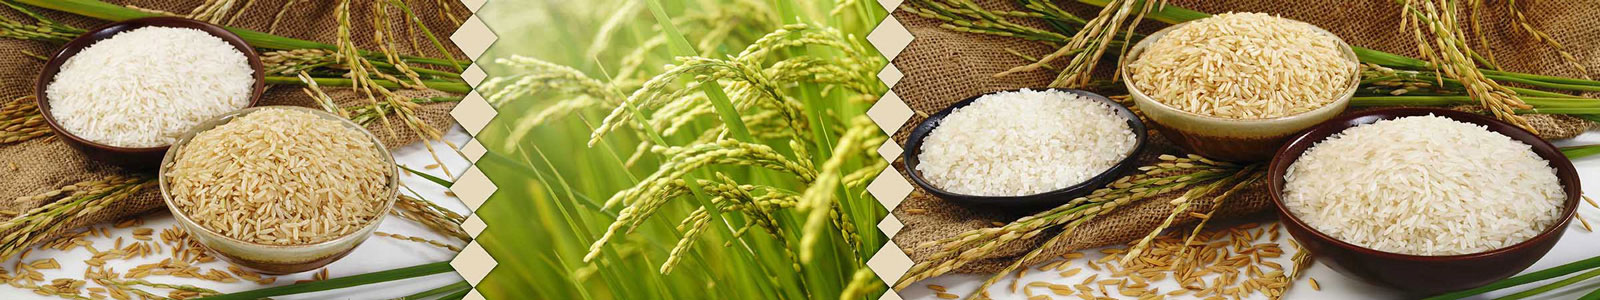 №2561 - Белый, японский и коричневый виды риса на фоне мешка и растение риса